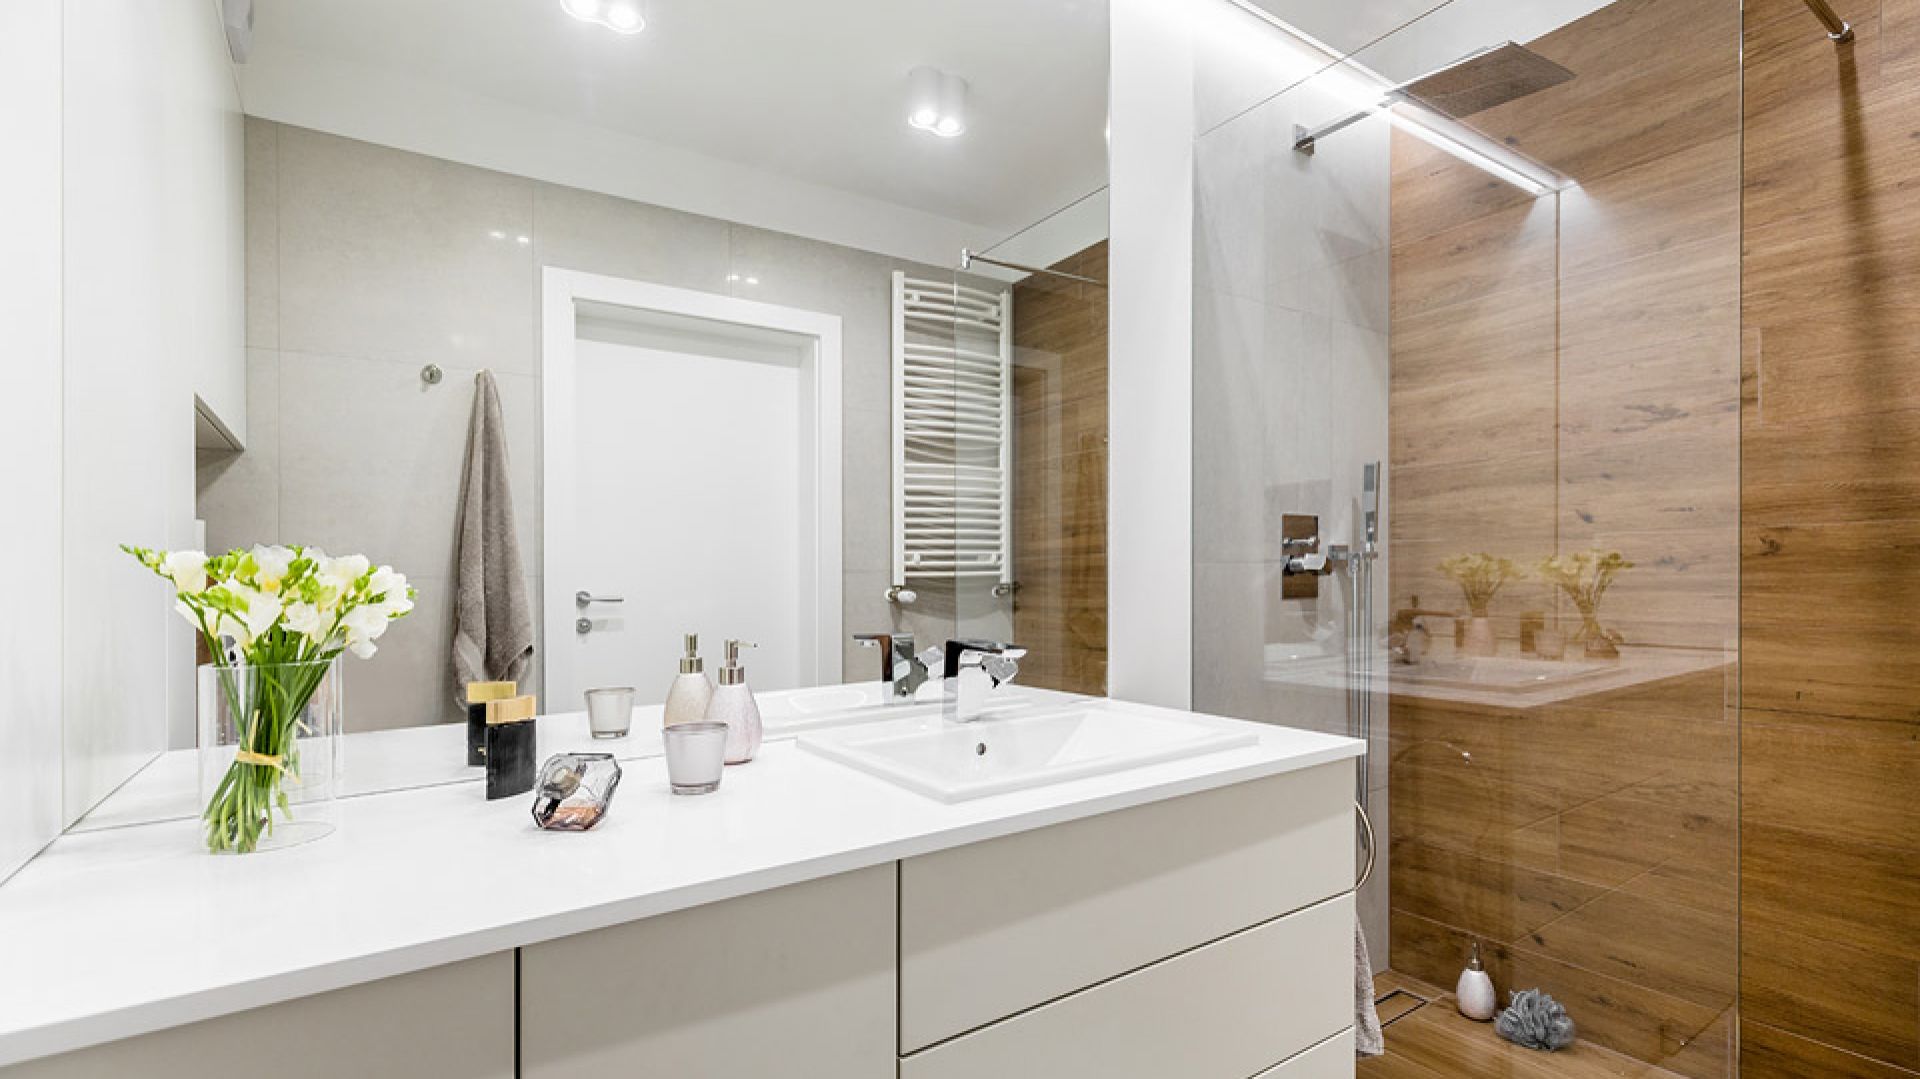 Mała łazienka z prysznicem: 10 najlepszych pomysłów. Piękne inspiracje!